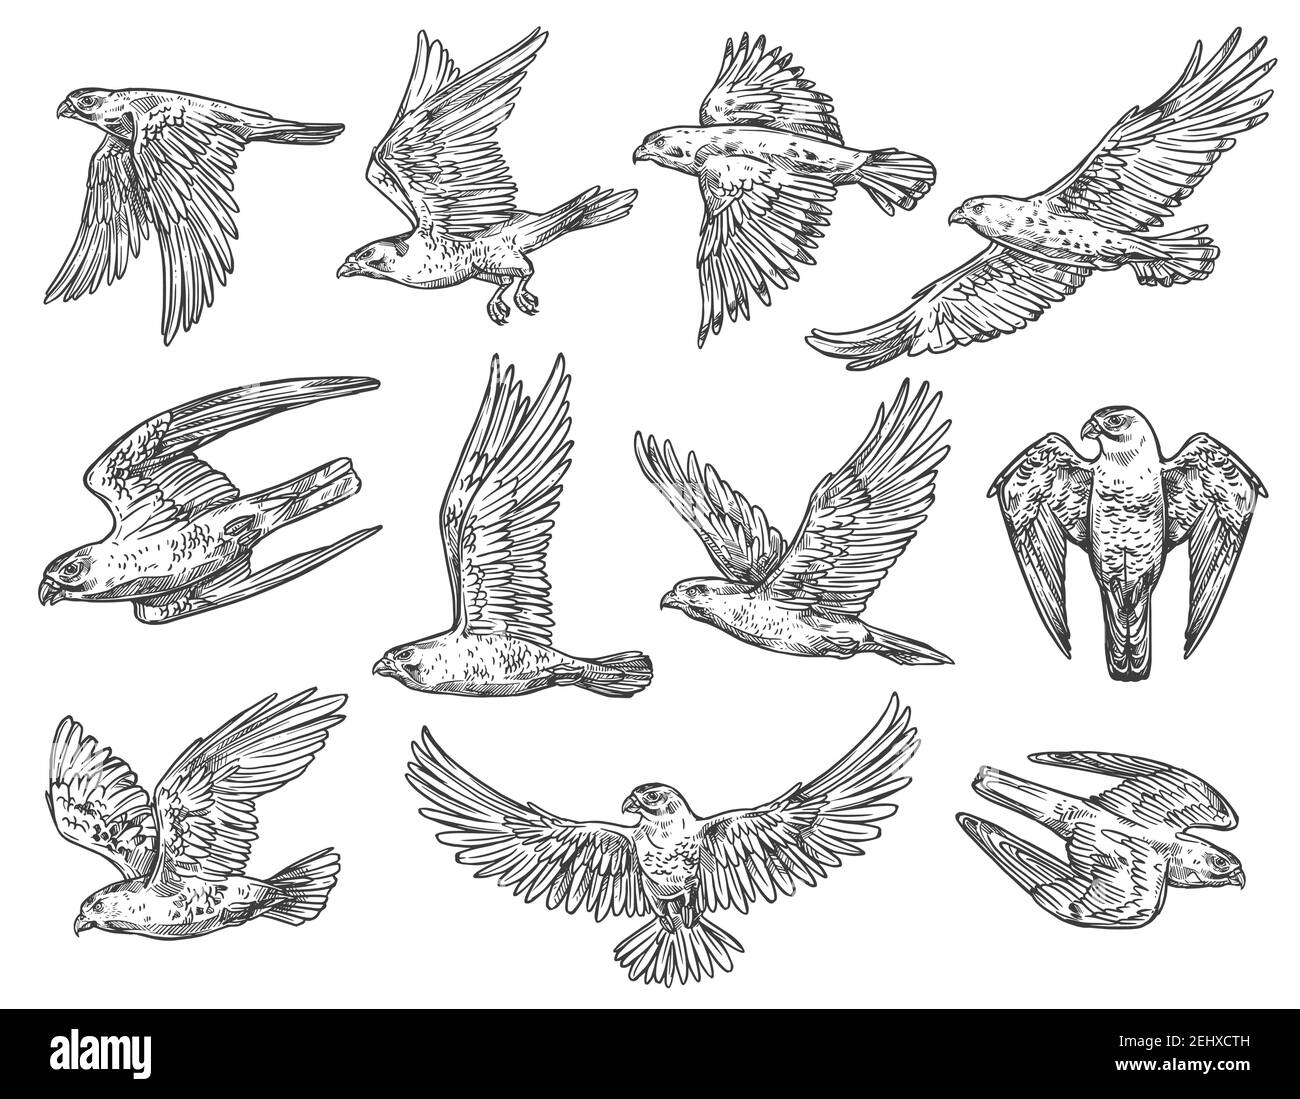 Adler, Falke und Falke Skizzen mit fliegenden Greifvögeln. Vector Raubtiere jagen oder angreifen in der Luft mit ausgebreiteten Flügeln. Falknerei spor Stock Vektor